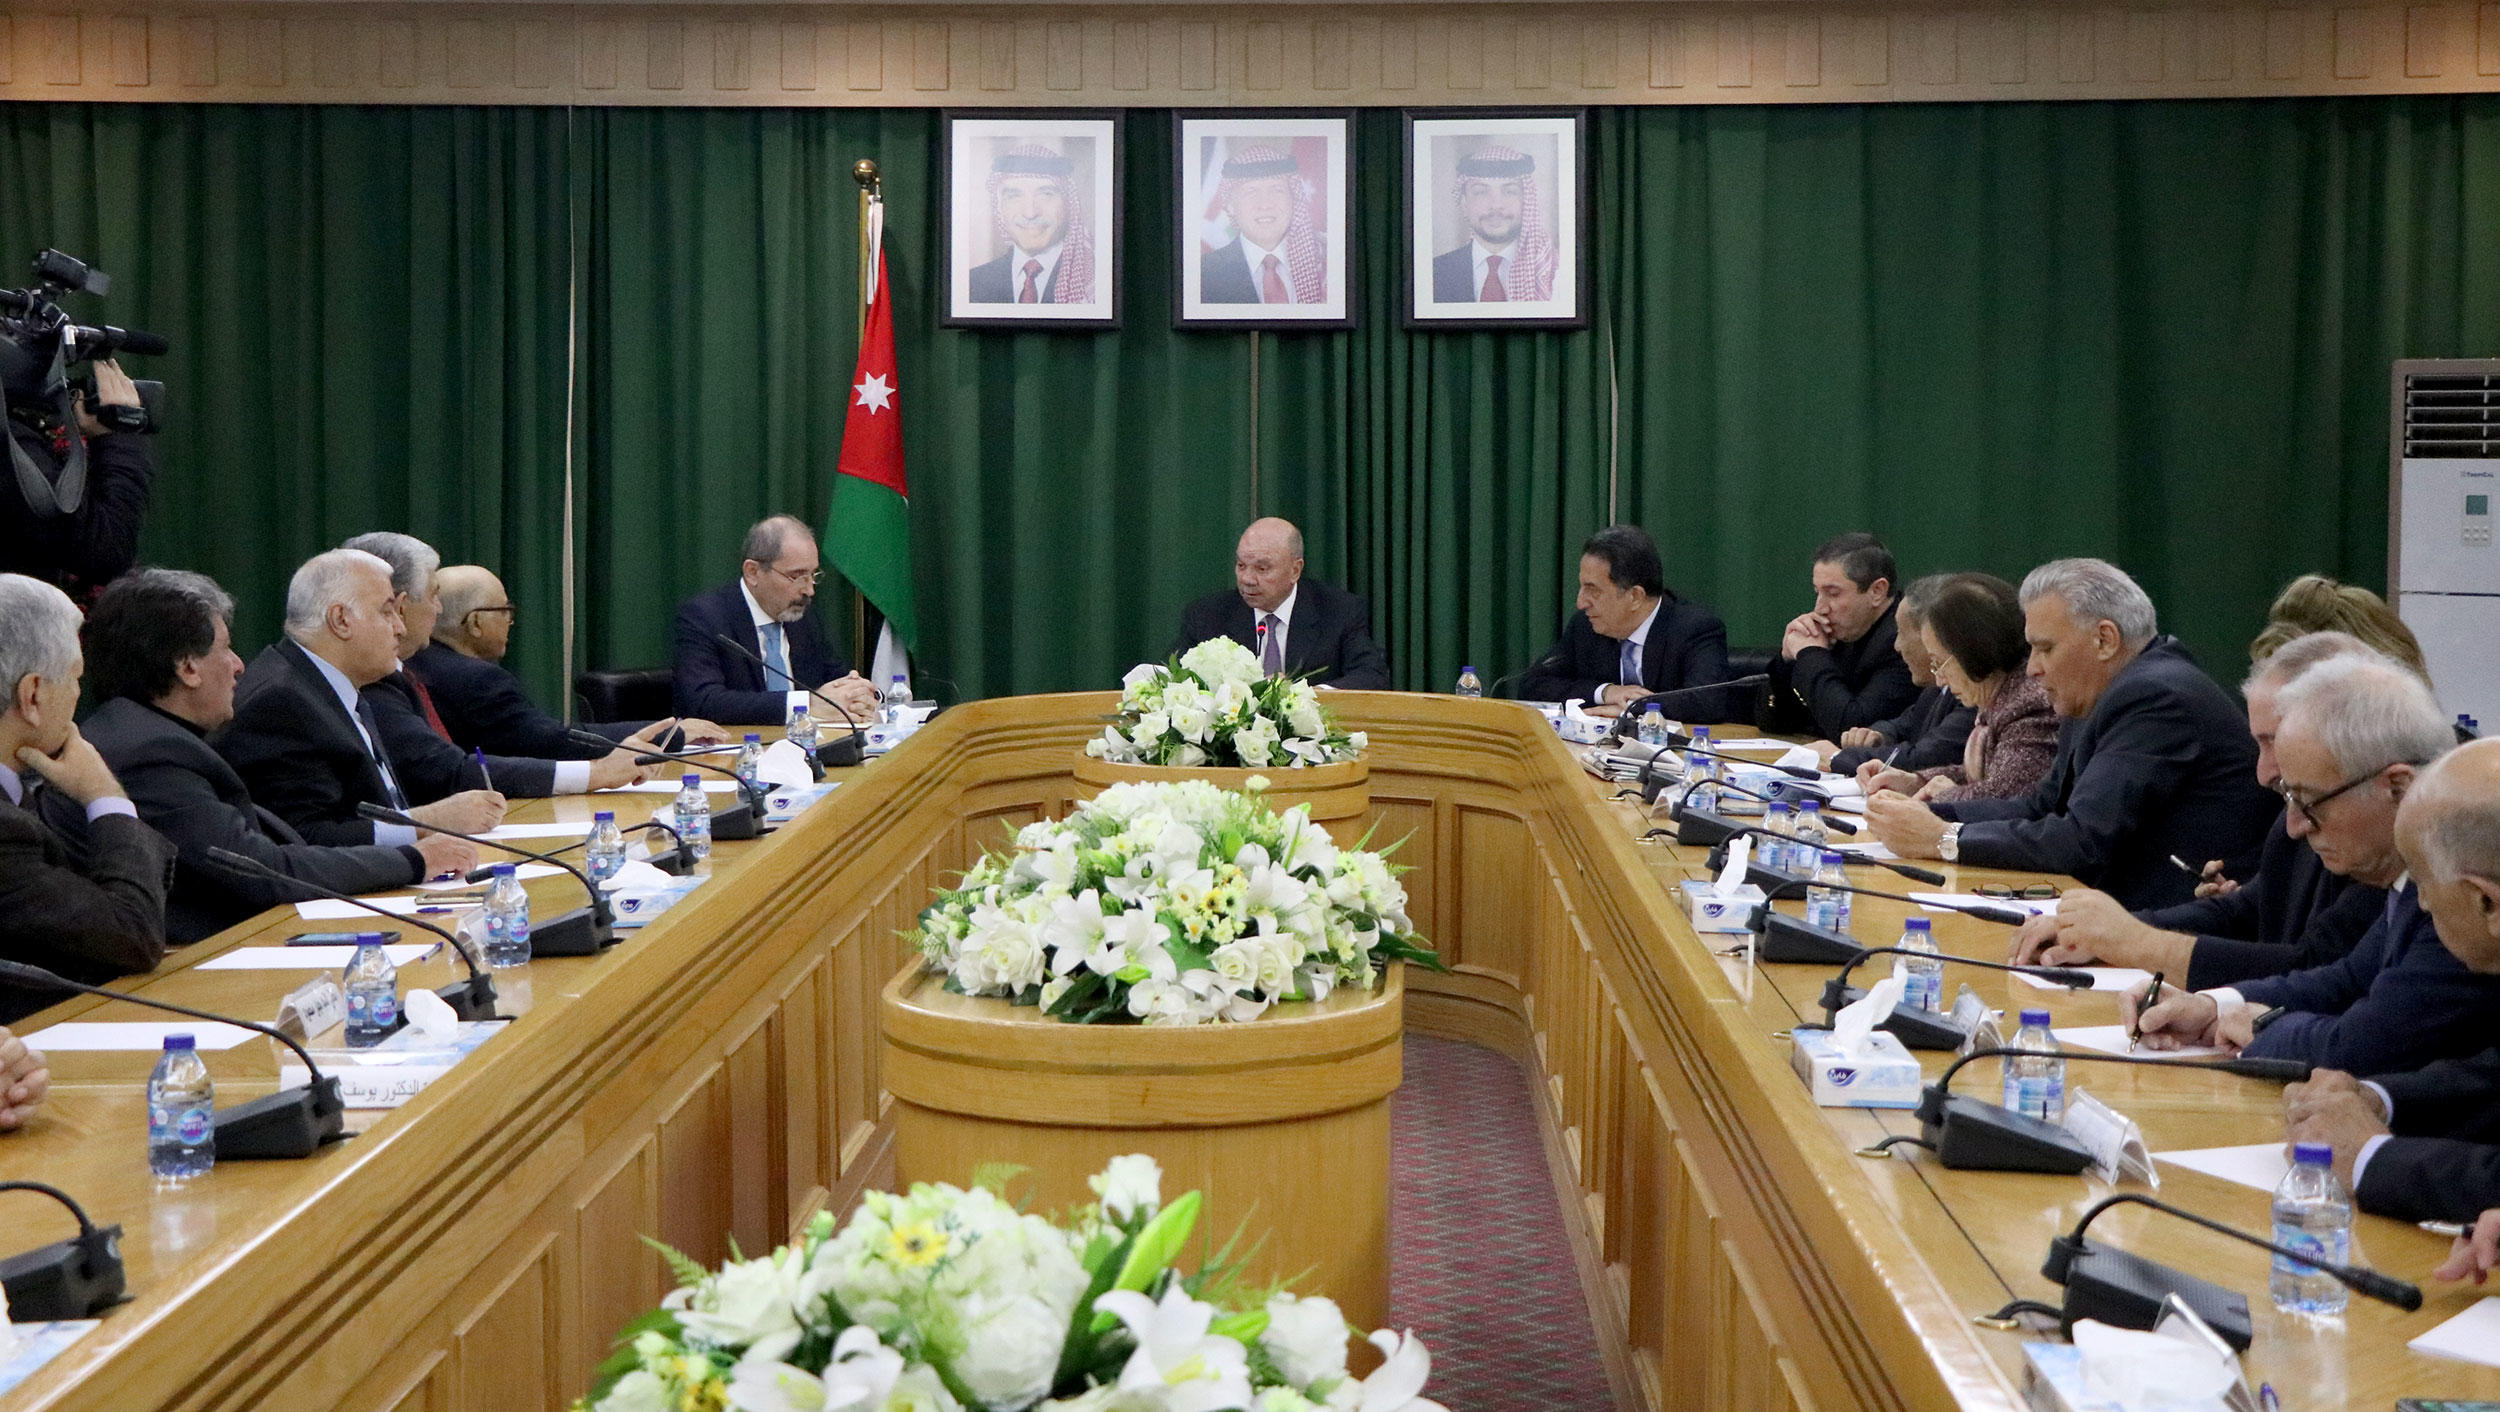 أشاد الفايز بالدبلوماسية الأردنية، التي يقودها جلالة الملك وتعكس مواقف المملكة حيال مختلف القضايا العربية والإقليمية والدولية. (بترا)